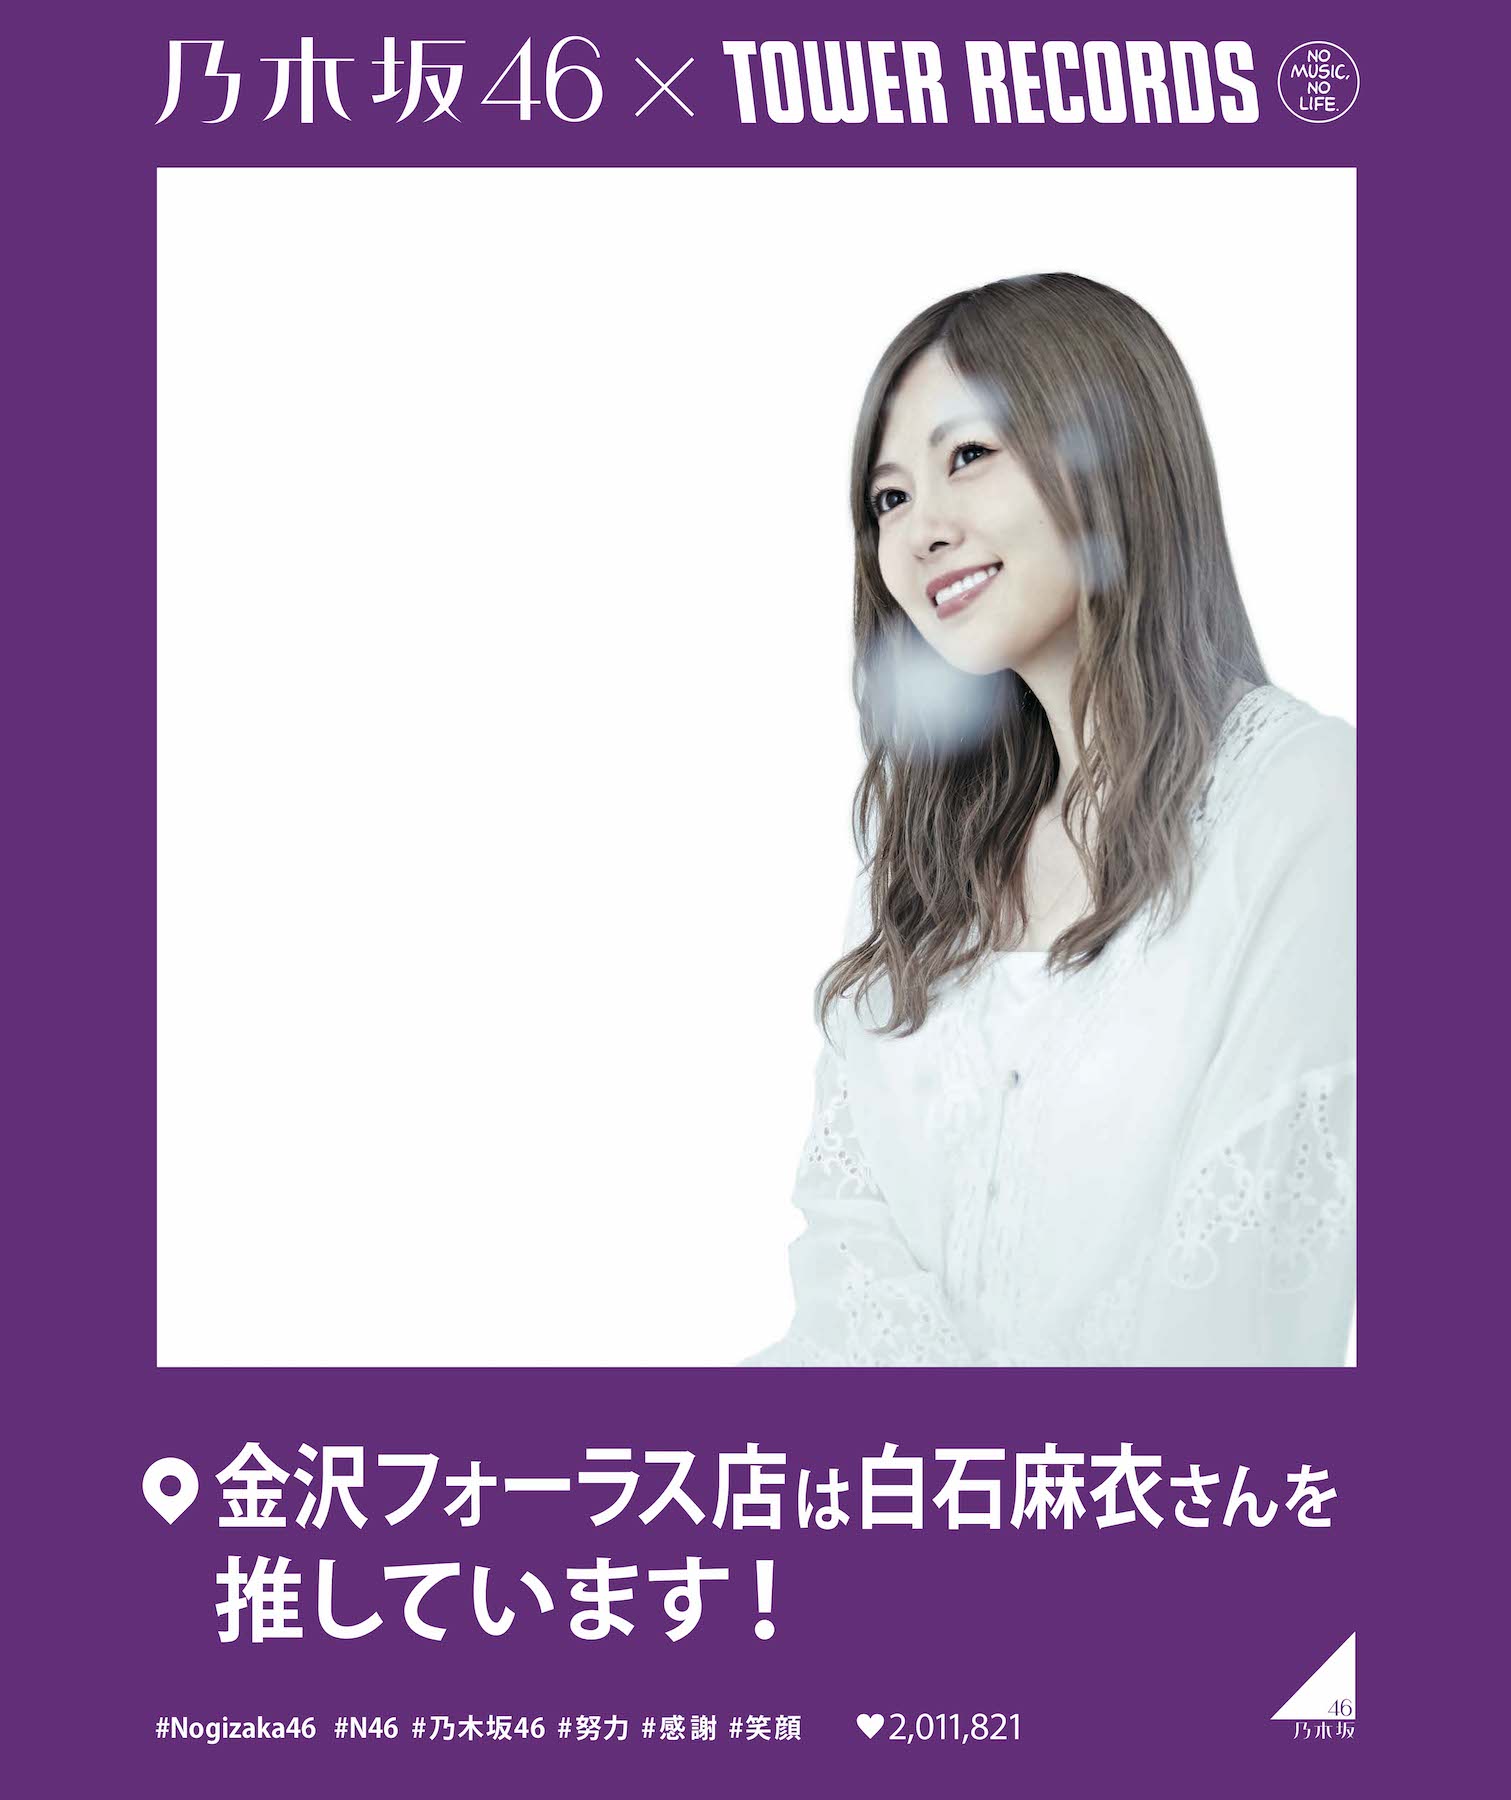 タワレコが乃木坂46大応援キャンペーン開催 全店で 推しメン フォトフレームを設置 Nogizaka Journal